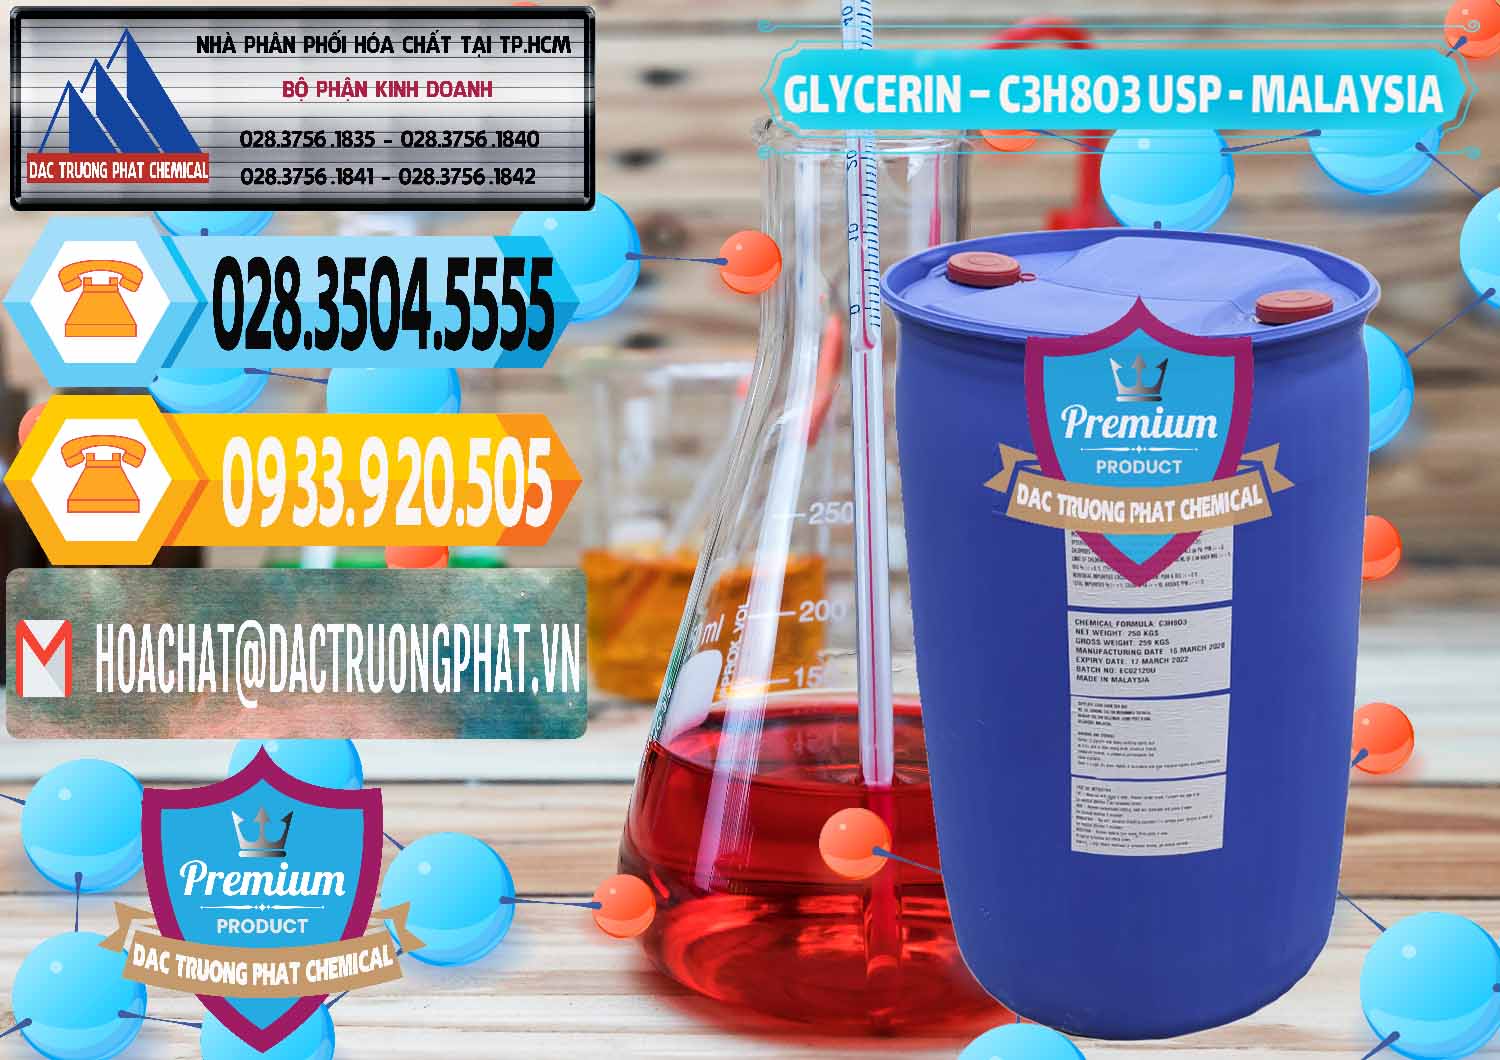 Đơn vị chuyên cung cấp và bán Glycerin – C3H8O3 USP Malaysia - 0233 - Công ty phân phối và bán hóa chất tại TP.HCM - hoachattayrua.net